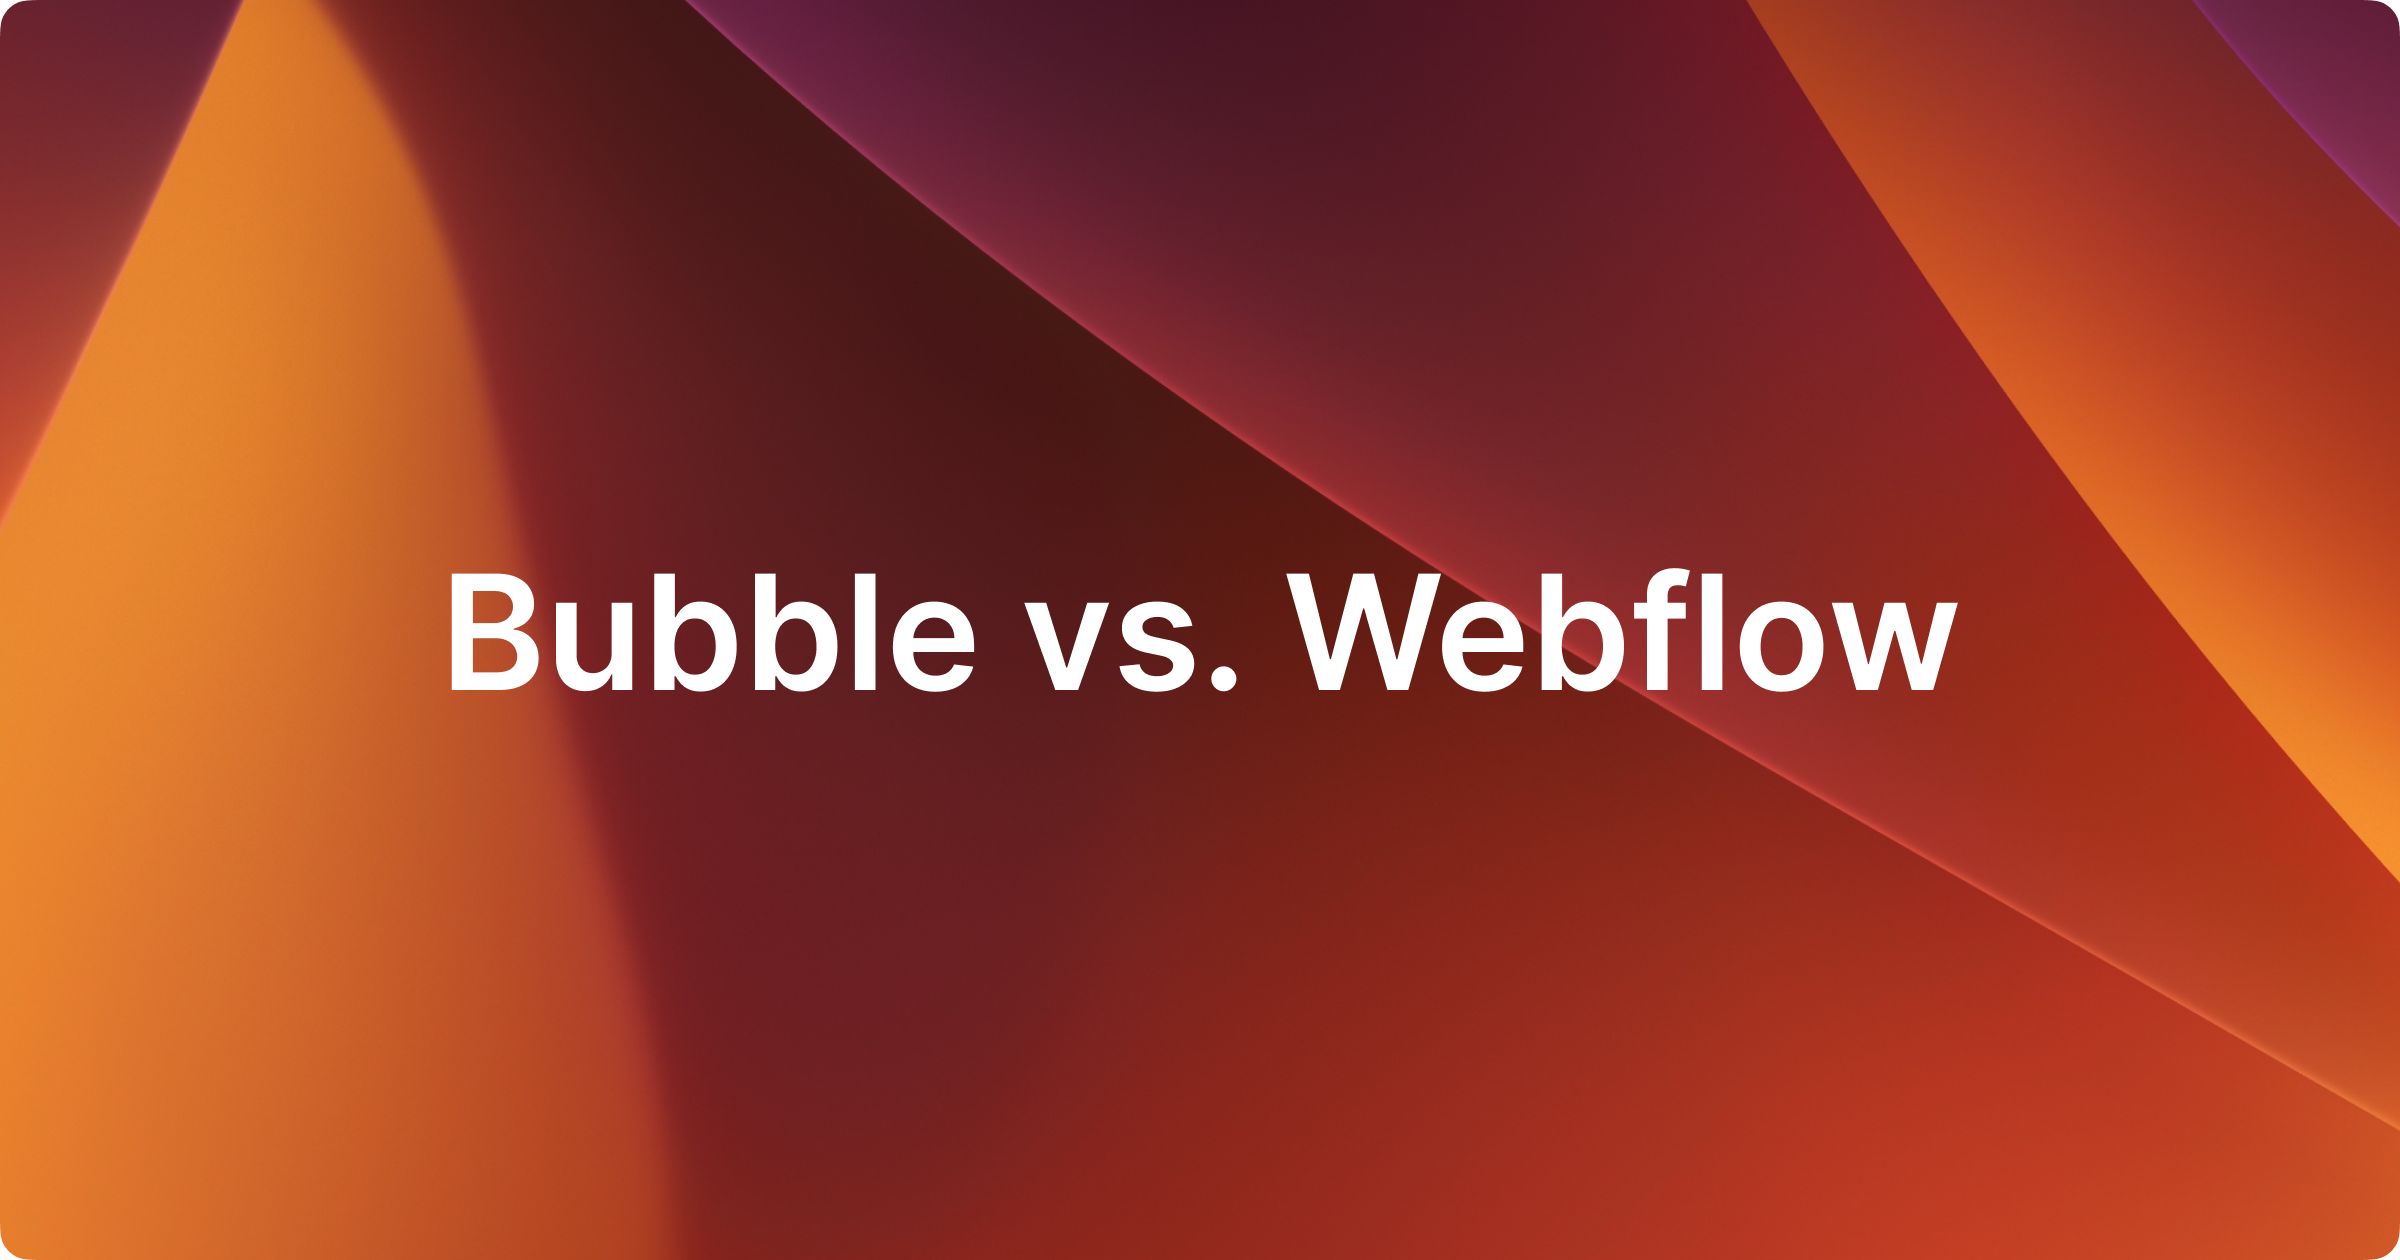 Bubble vs. Webflow - Which one should I learn?